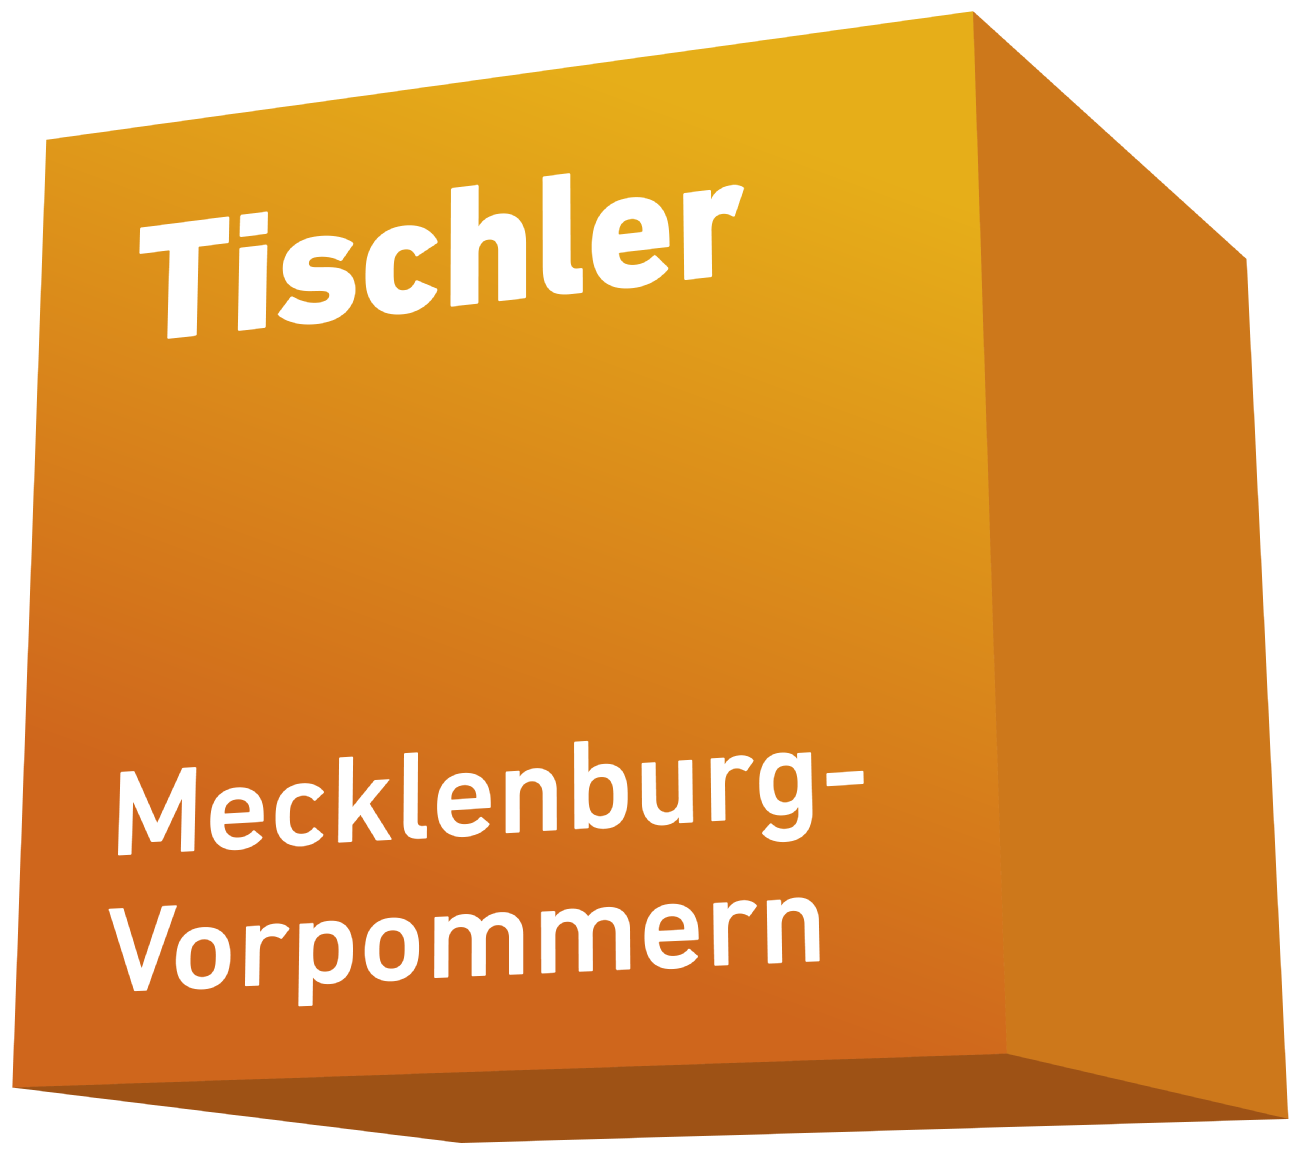 Tischler Mecklenburg-Vorpommern